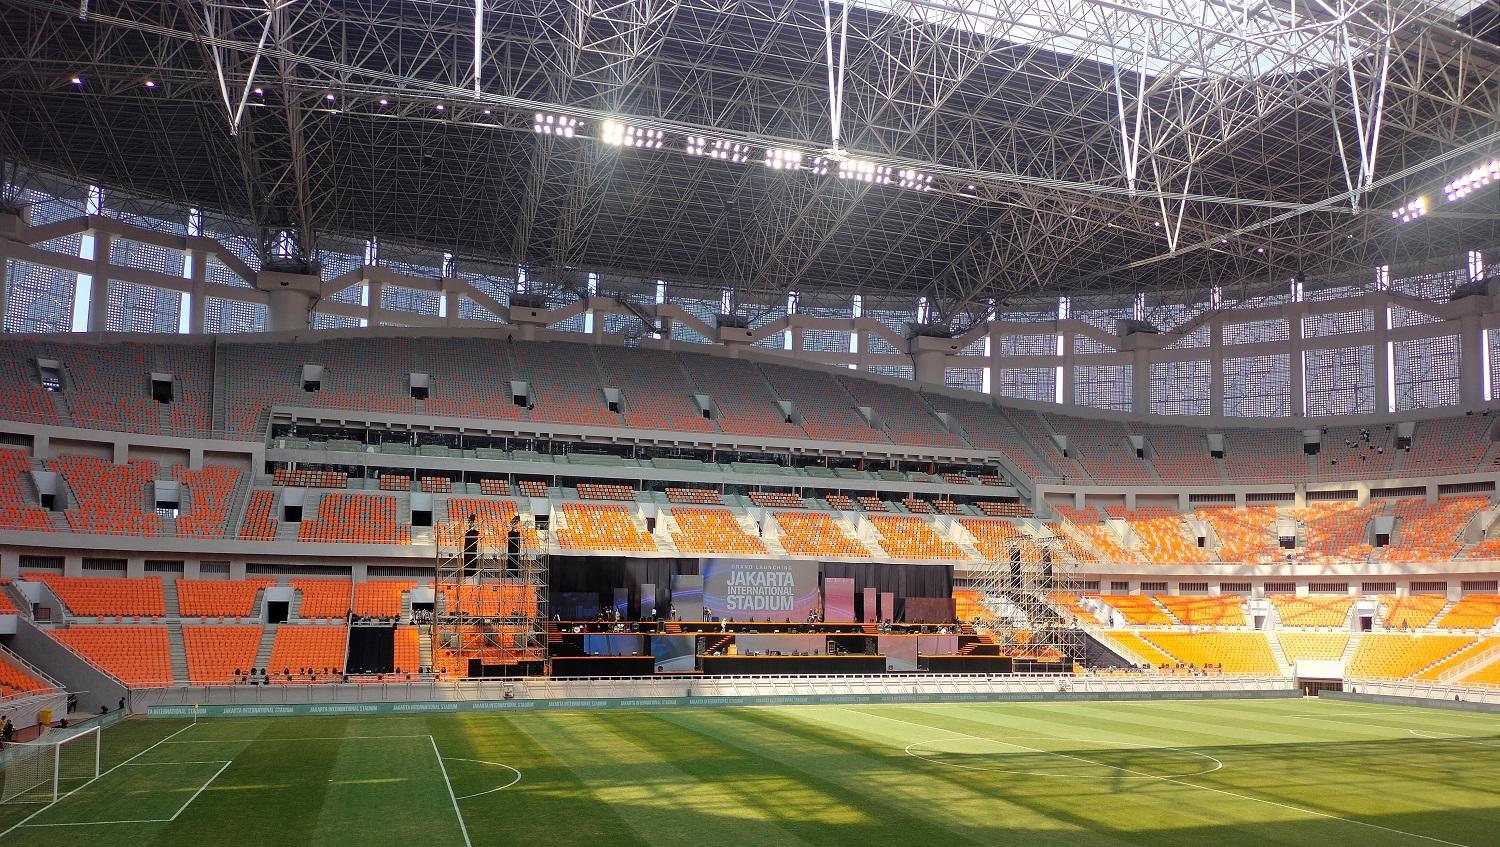 Lapangan di Jakarta International Stadium (JIS) berukuran 105 x 68 meter dengan permukaan lapangan menggunakan rumput hibrida.